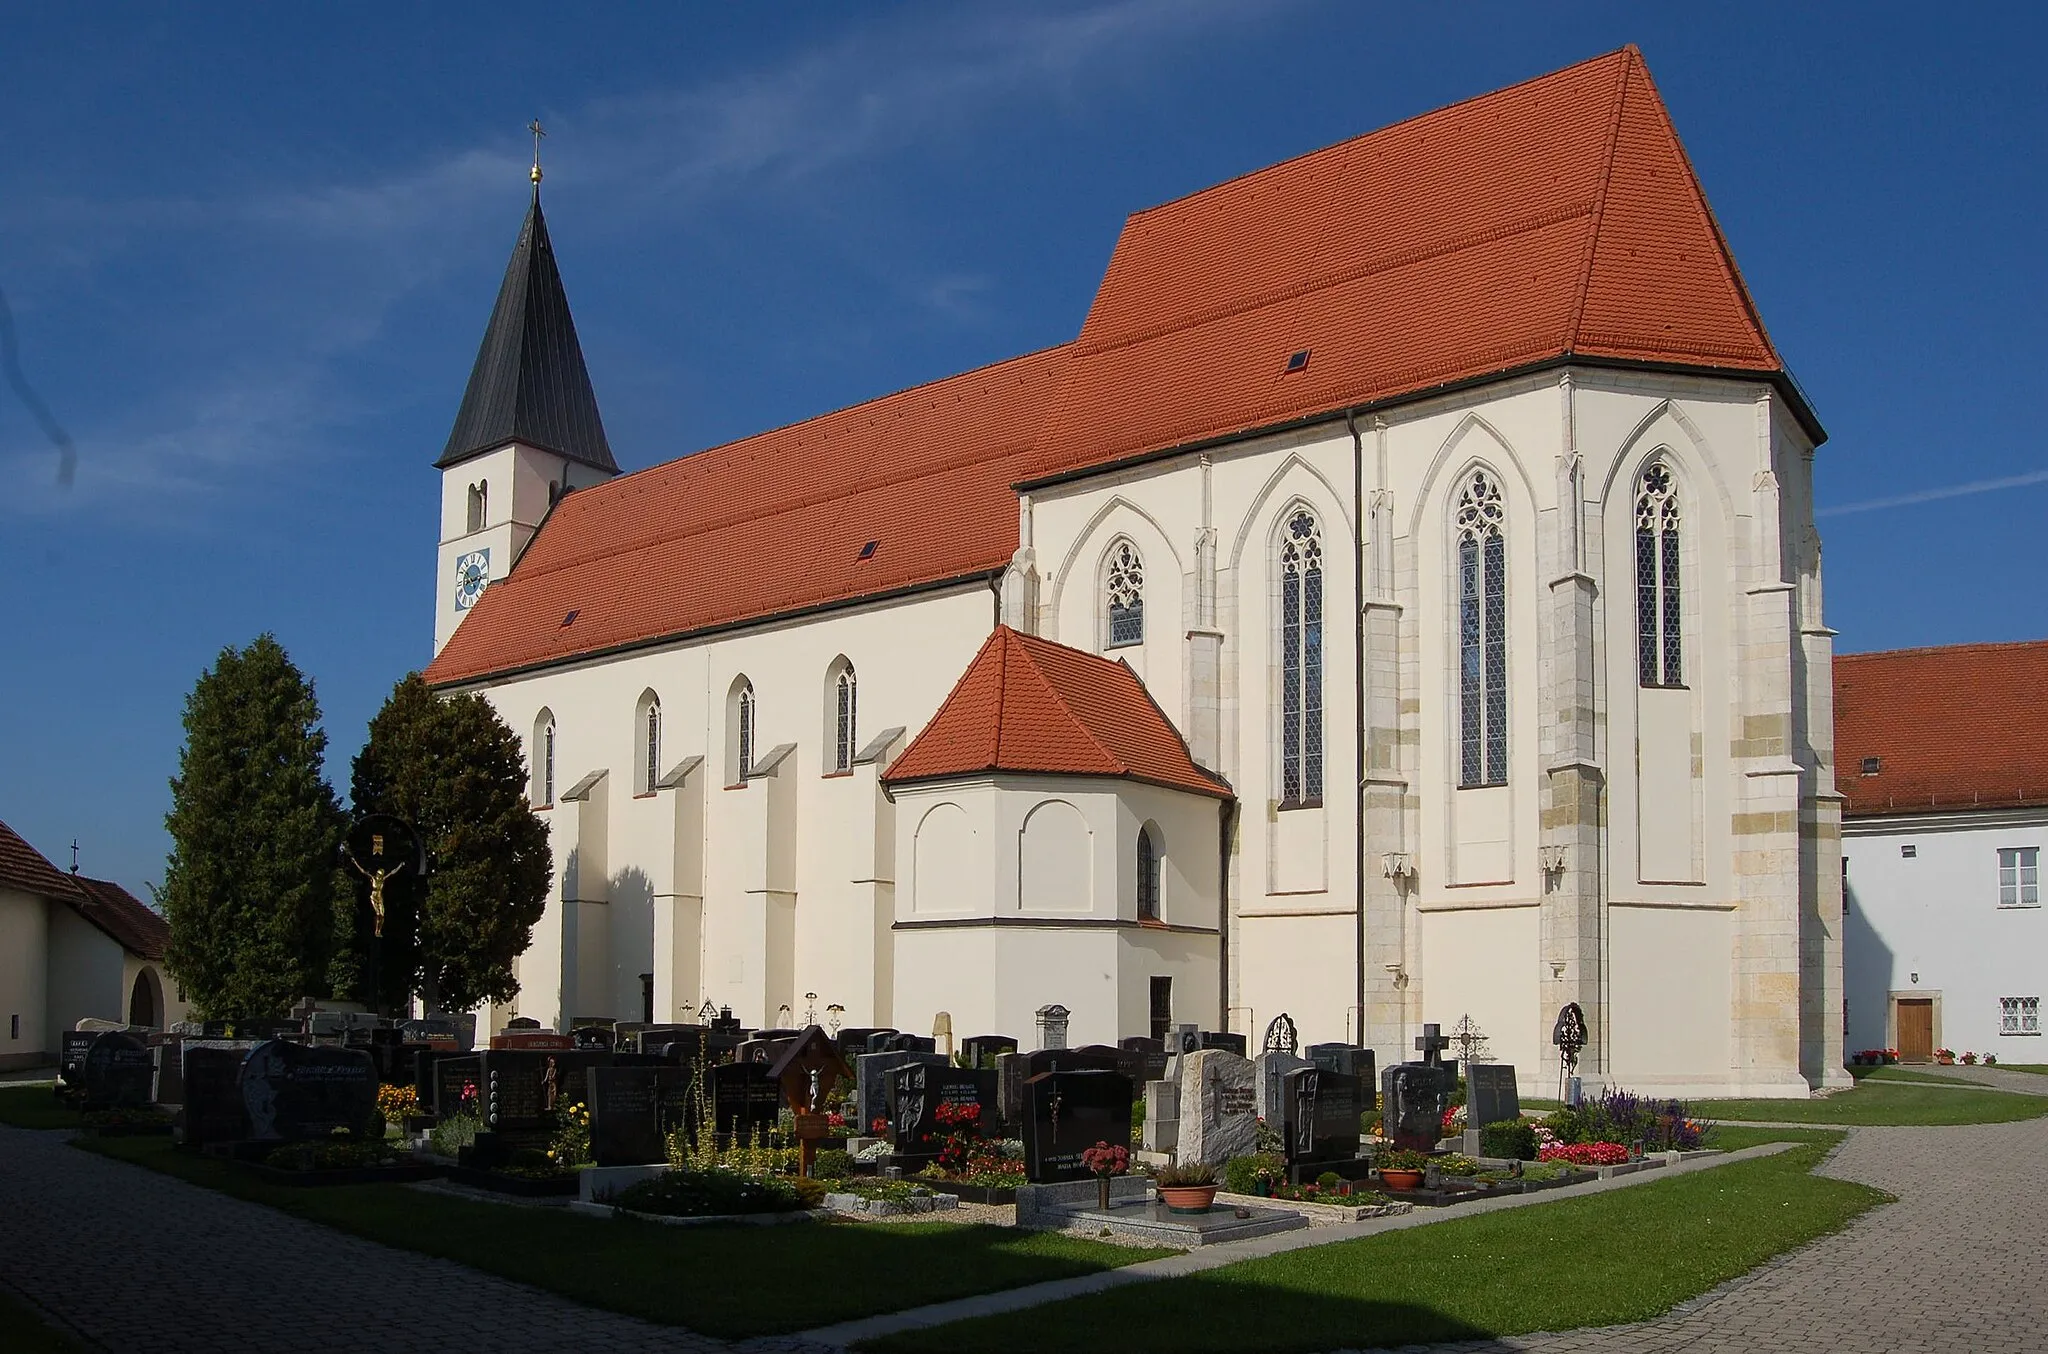 Photo showing: Ansicht der Wallfahrtskirche Sossau, in der Umgebung von Straubing.
Aufnahme aus dem Innenhof der Kirche, im Vordergrund ein Teil des Friedhofes